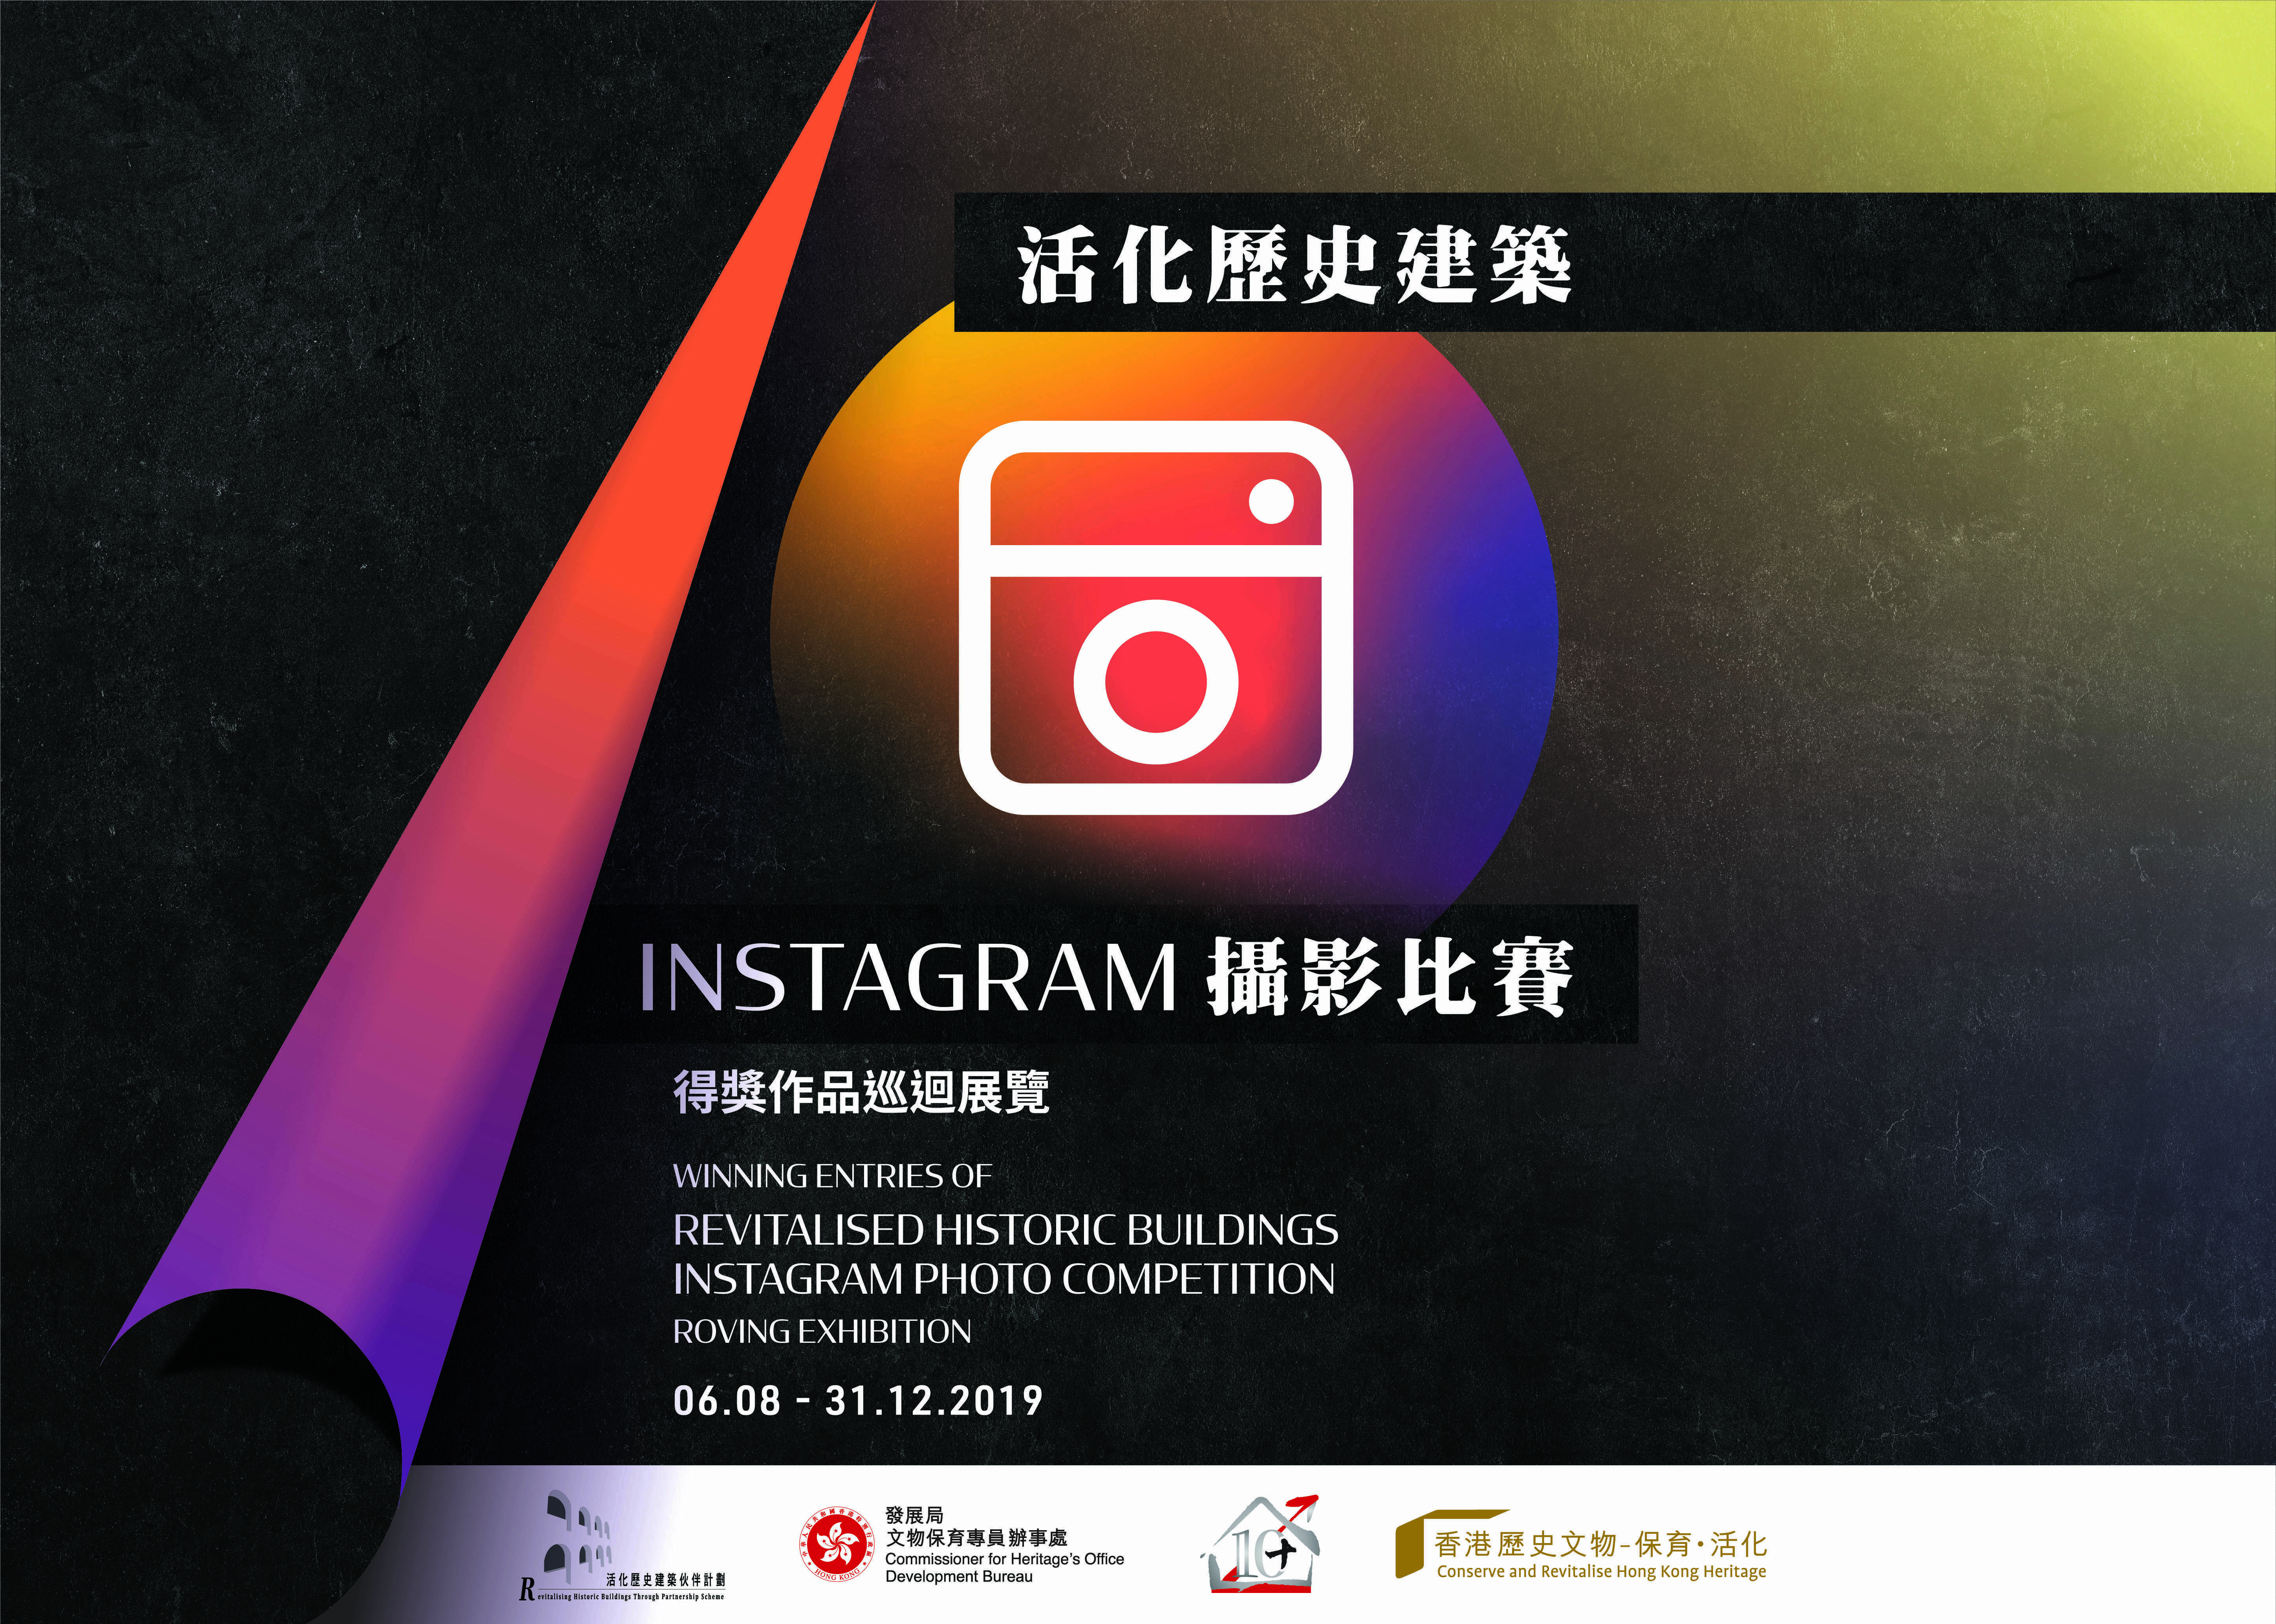 「活化历史建筑Instagram摄影比赛」得奖作品巡迴展览